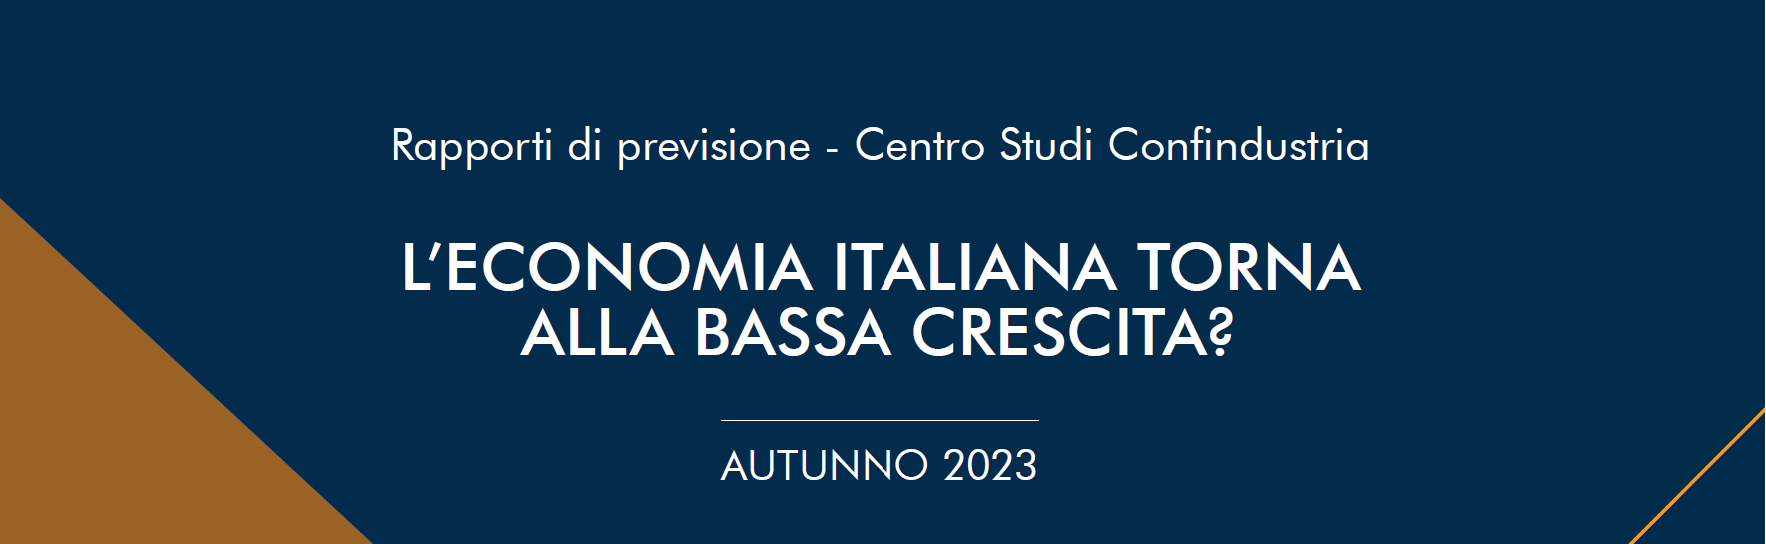 Rapporto di previsione del CSC: L’economia italiana torna alla bassa crescita